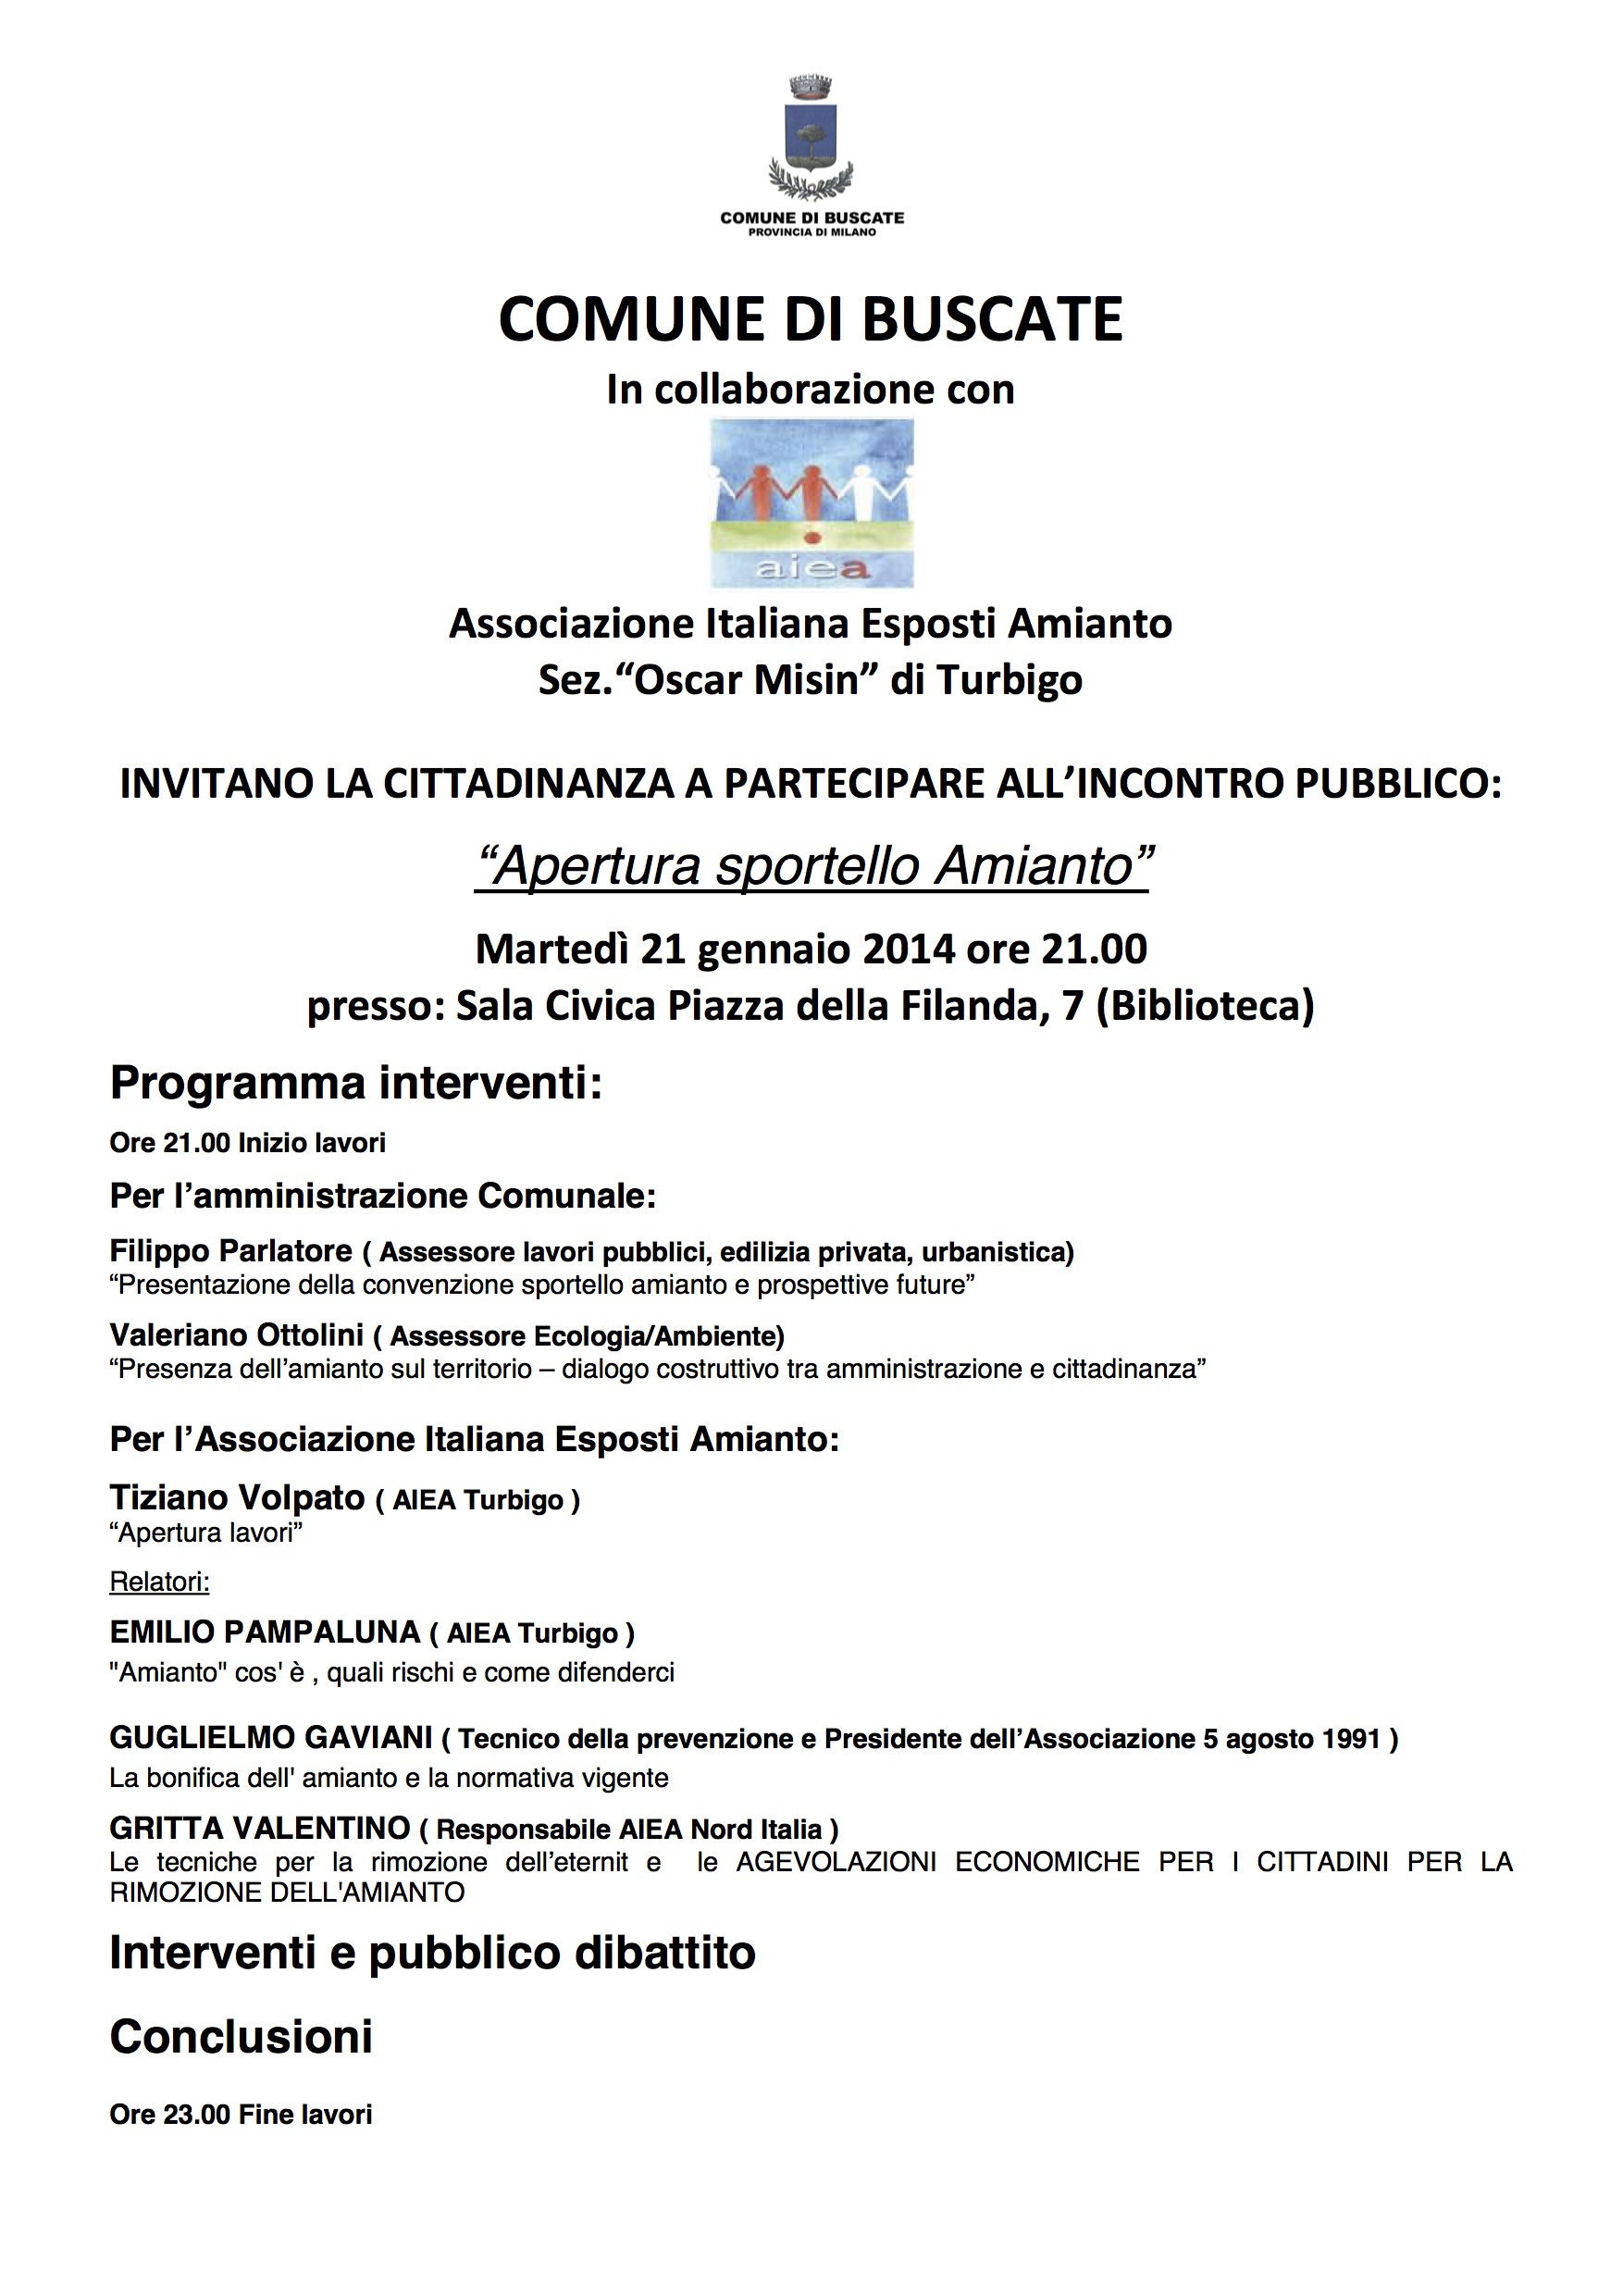 AIEA Sez. Turbigo invitano la cittadinanza all'“Apertura sportello Amianto”, martedì 21 gennaio 2014 ore 21.00 presso: Sala Civica Piazza della Filanda, 7 (Biblioteca)